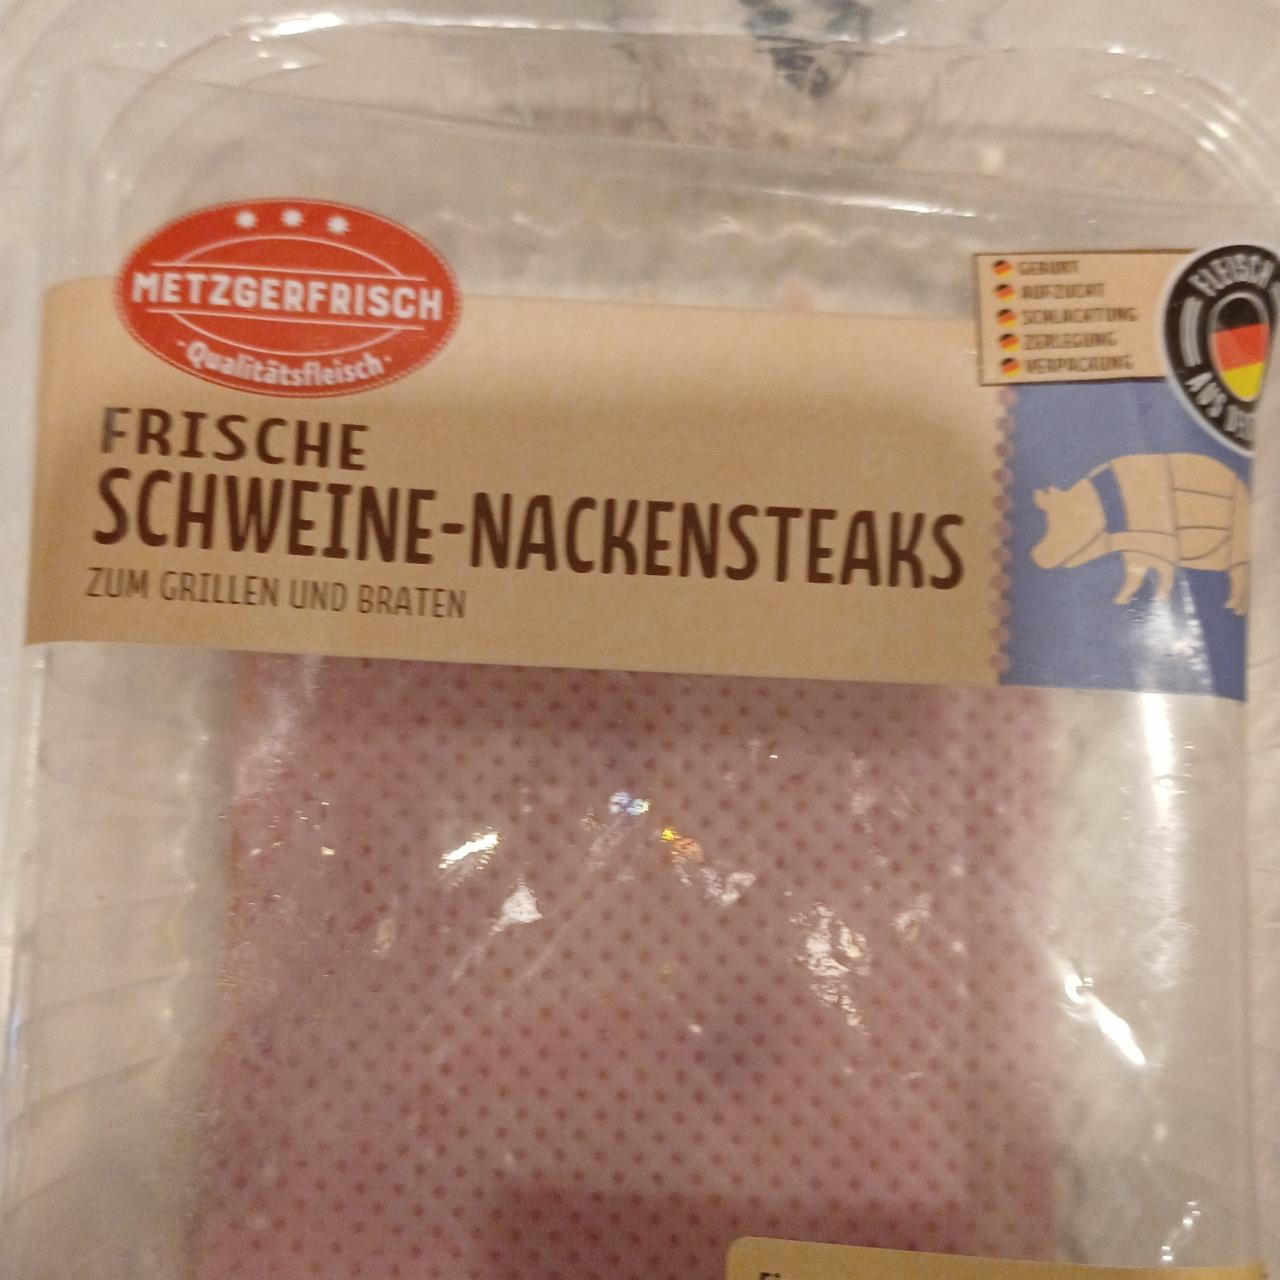 Zdjęcia - Frische Schweine Nackenstteaks Metzgerfisch